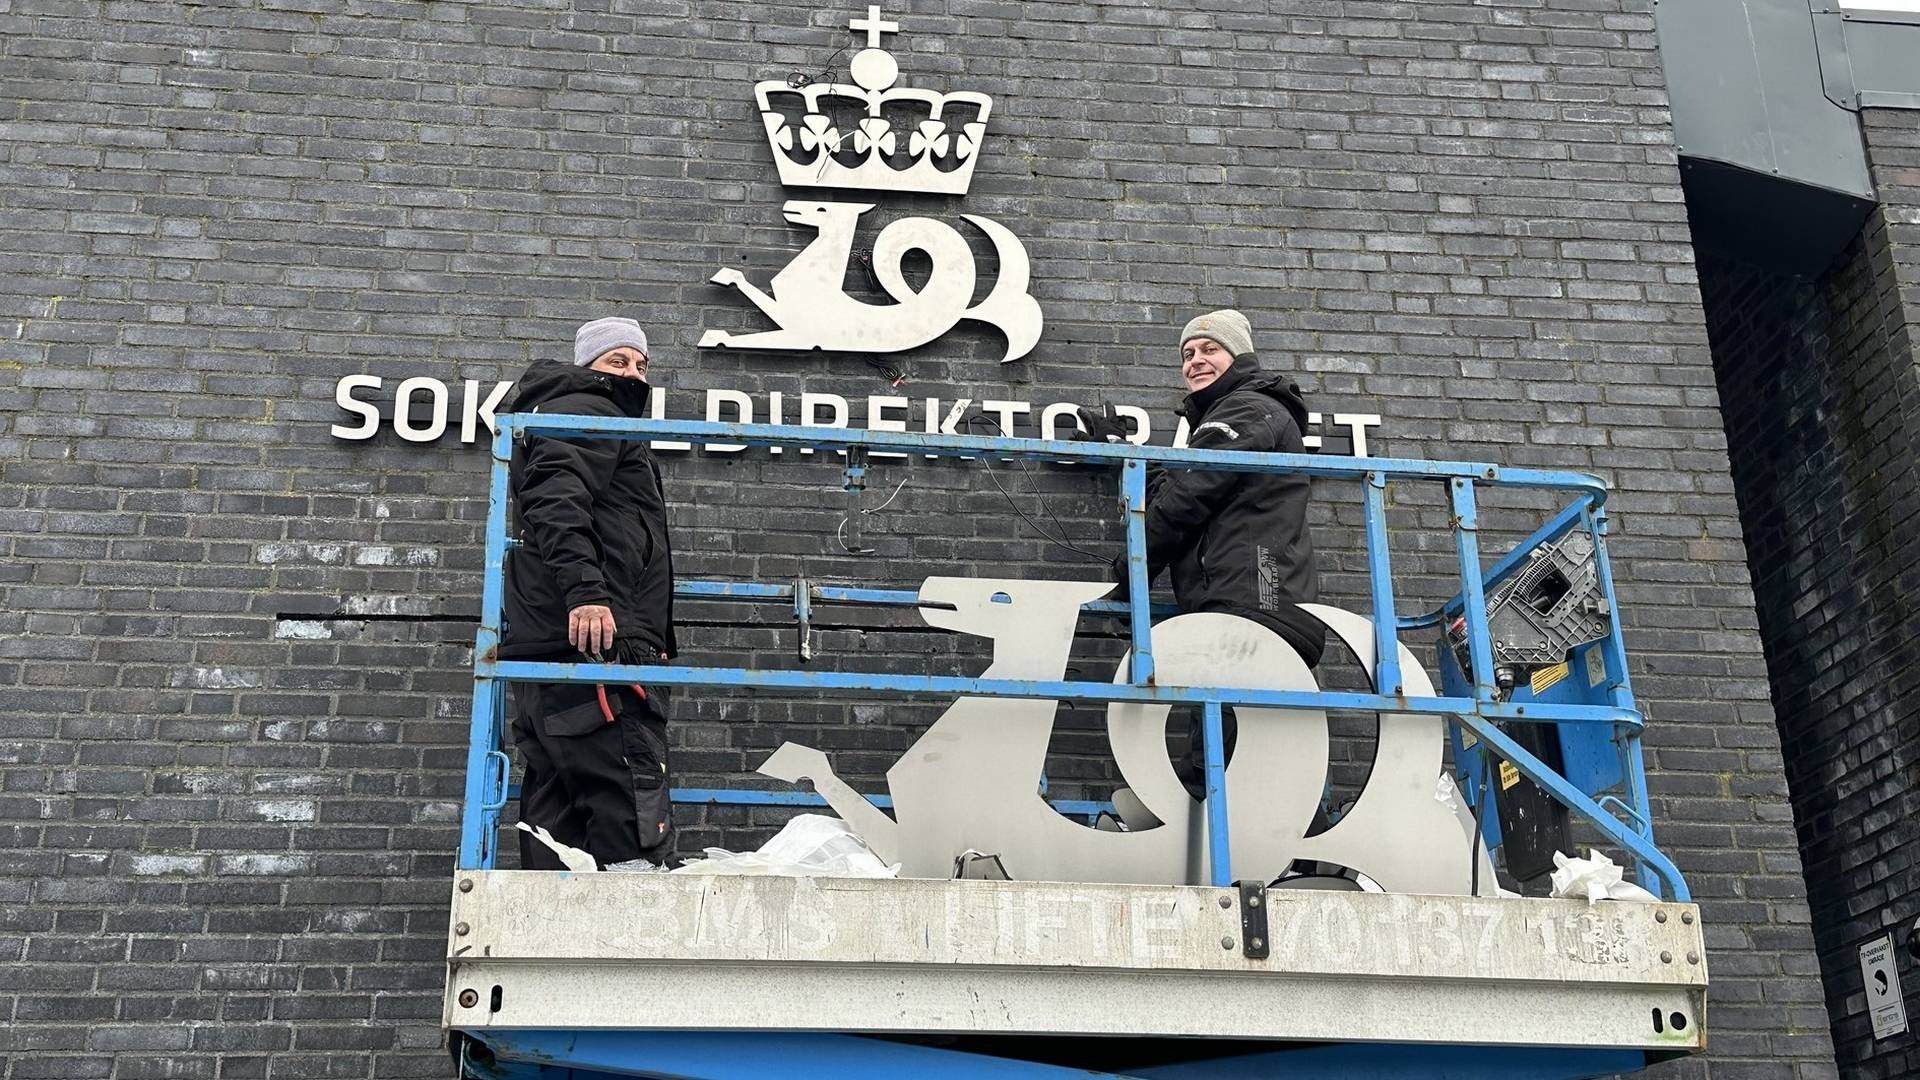 NYTT NAVNESKILT: Sokkeldirektoratet har byttet navn og logo på veggen. | Foto: Sokkeldirektoratet